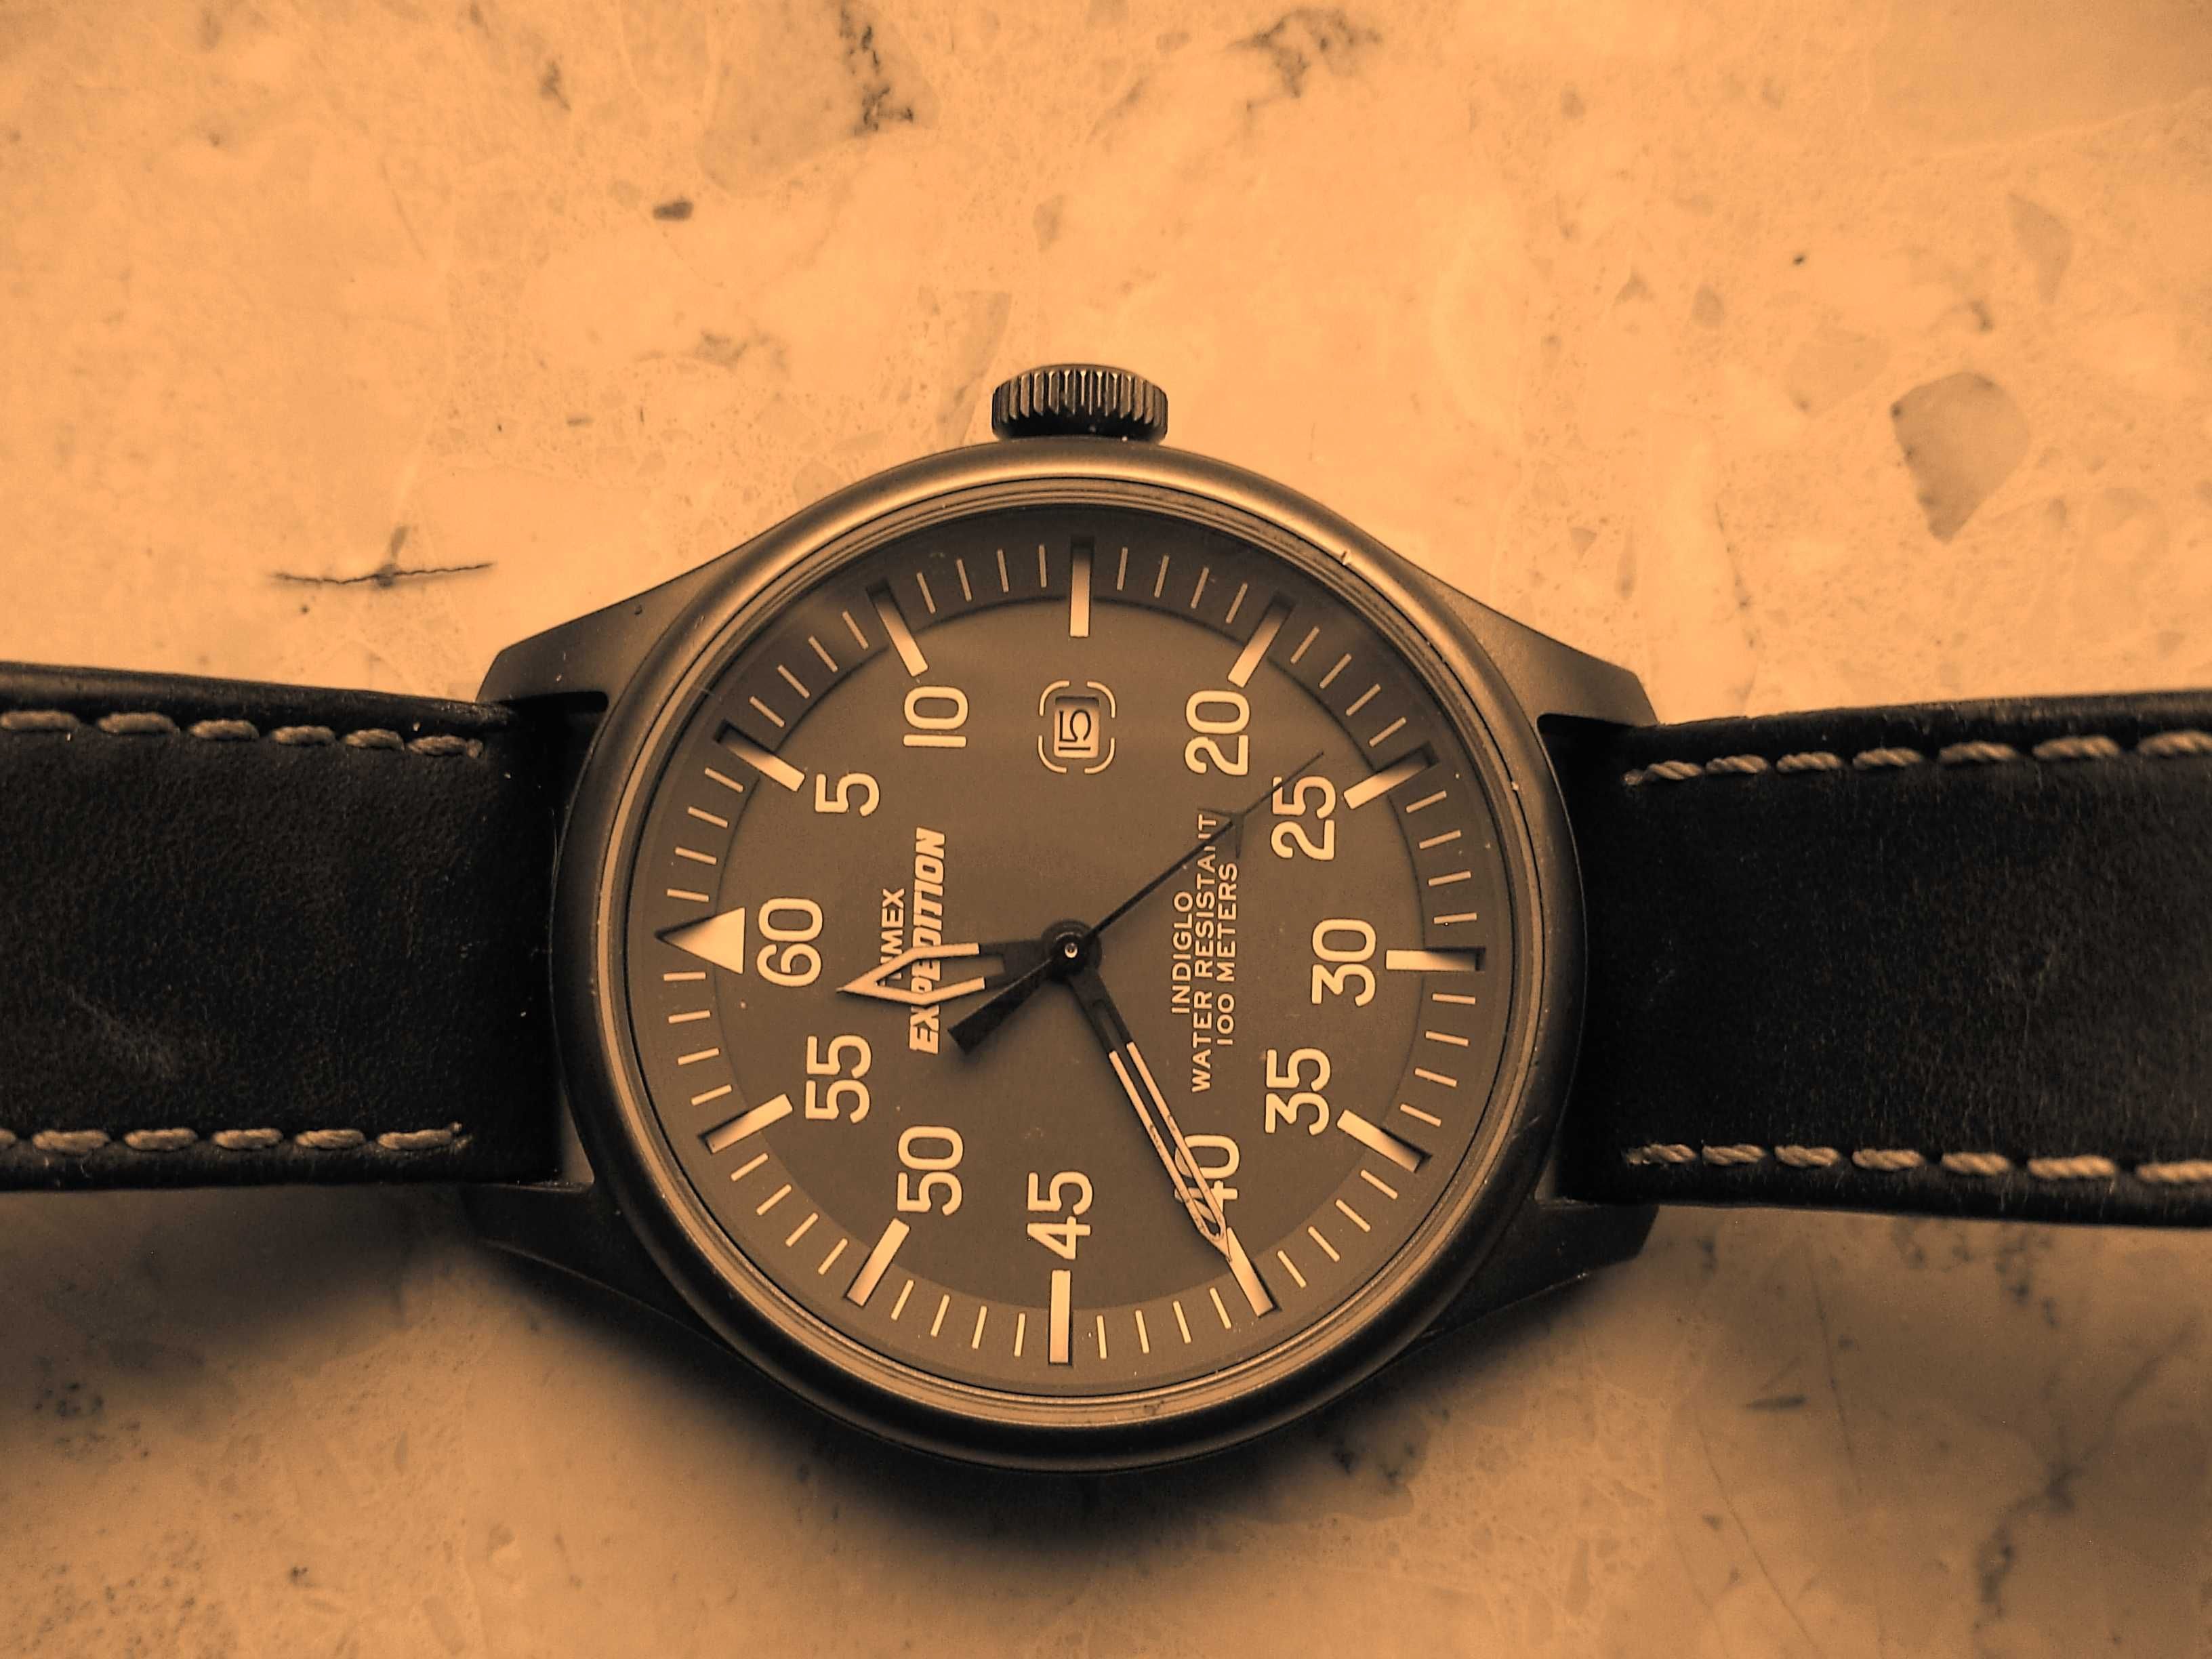 Timex Expedition T49874 na wzór wojskowy (lotniczy).